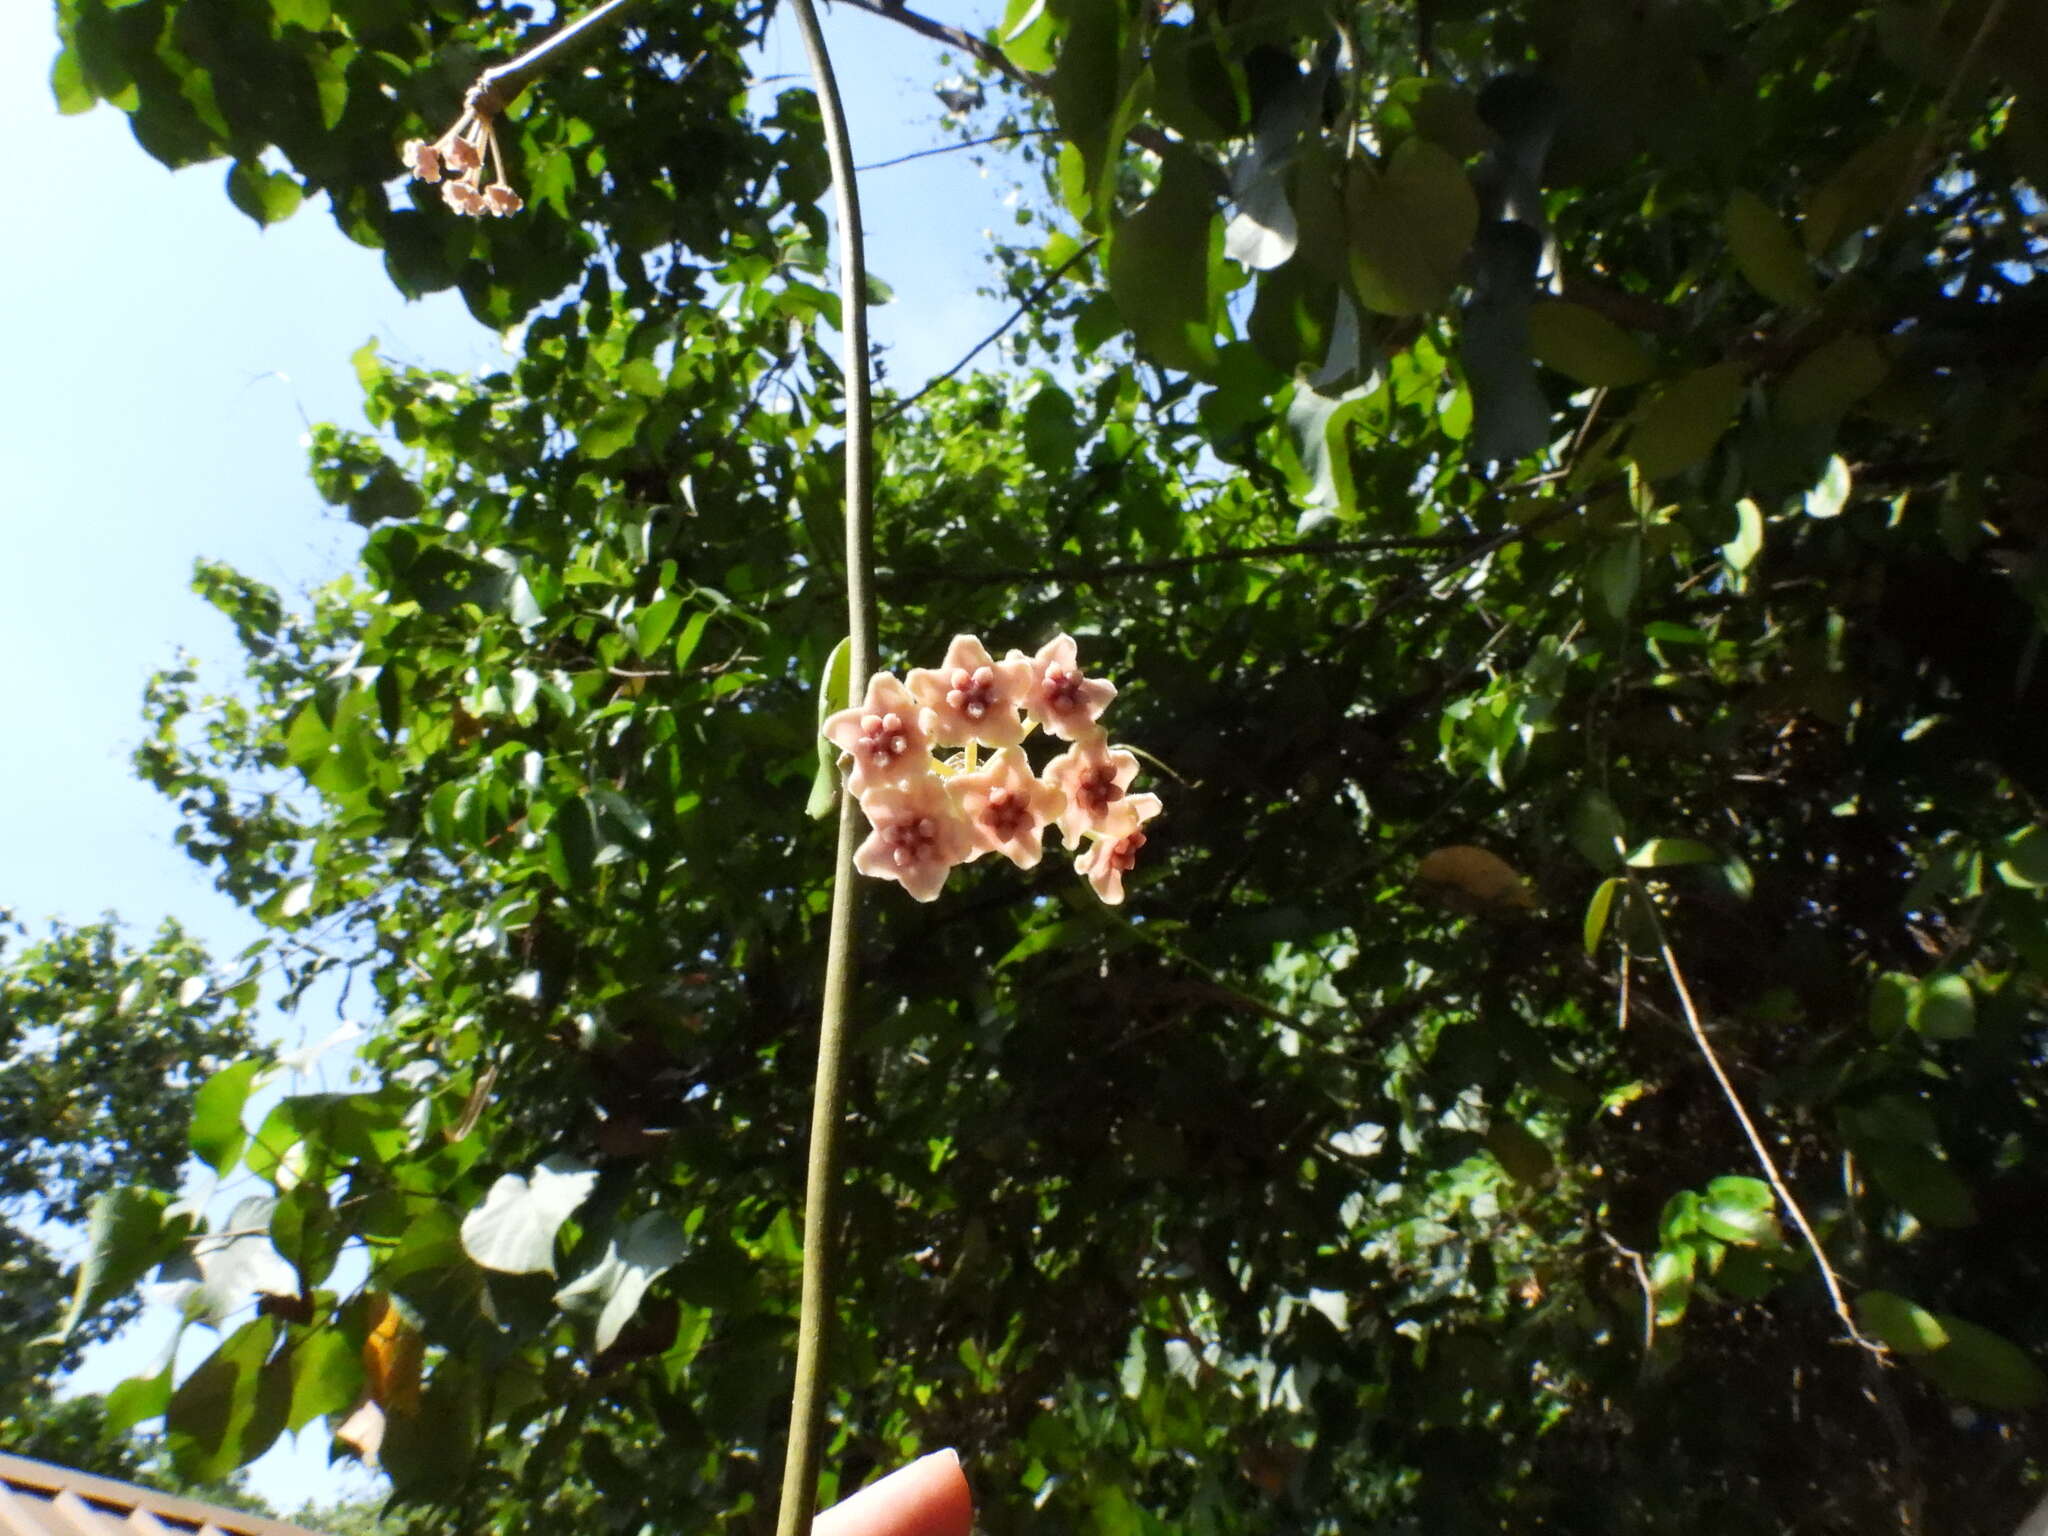 Image of Hoya diversifolia Bl.